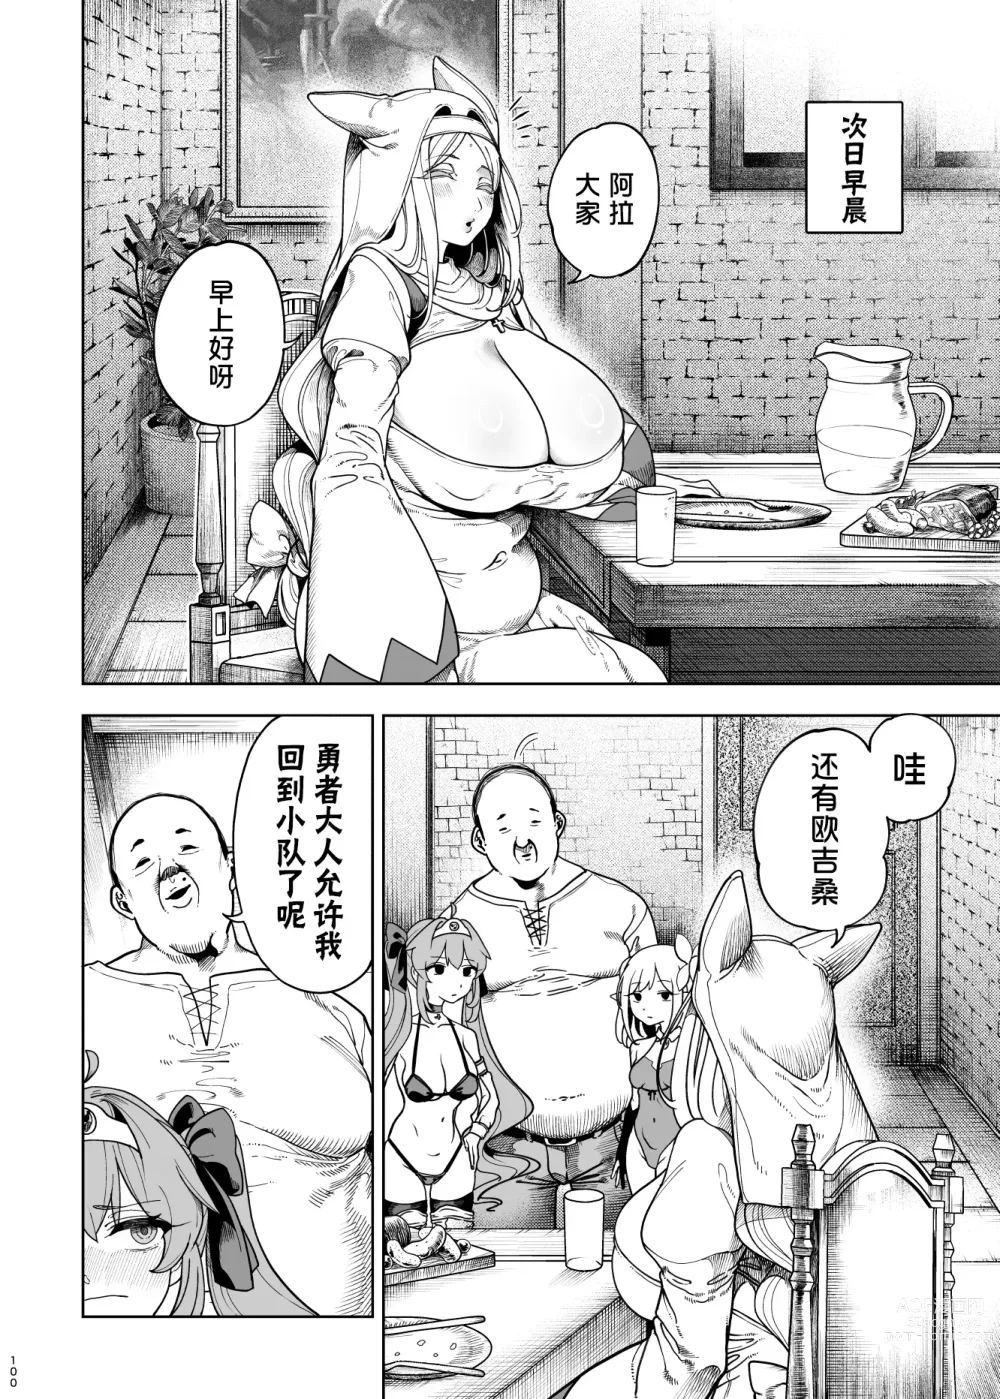 Page 95 of manga 異世界わからせおじさん 勇者凌辱編